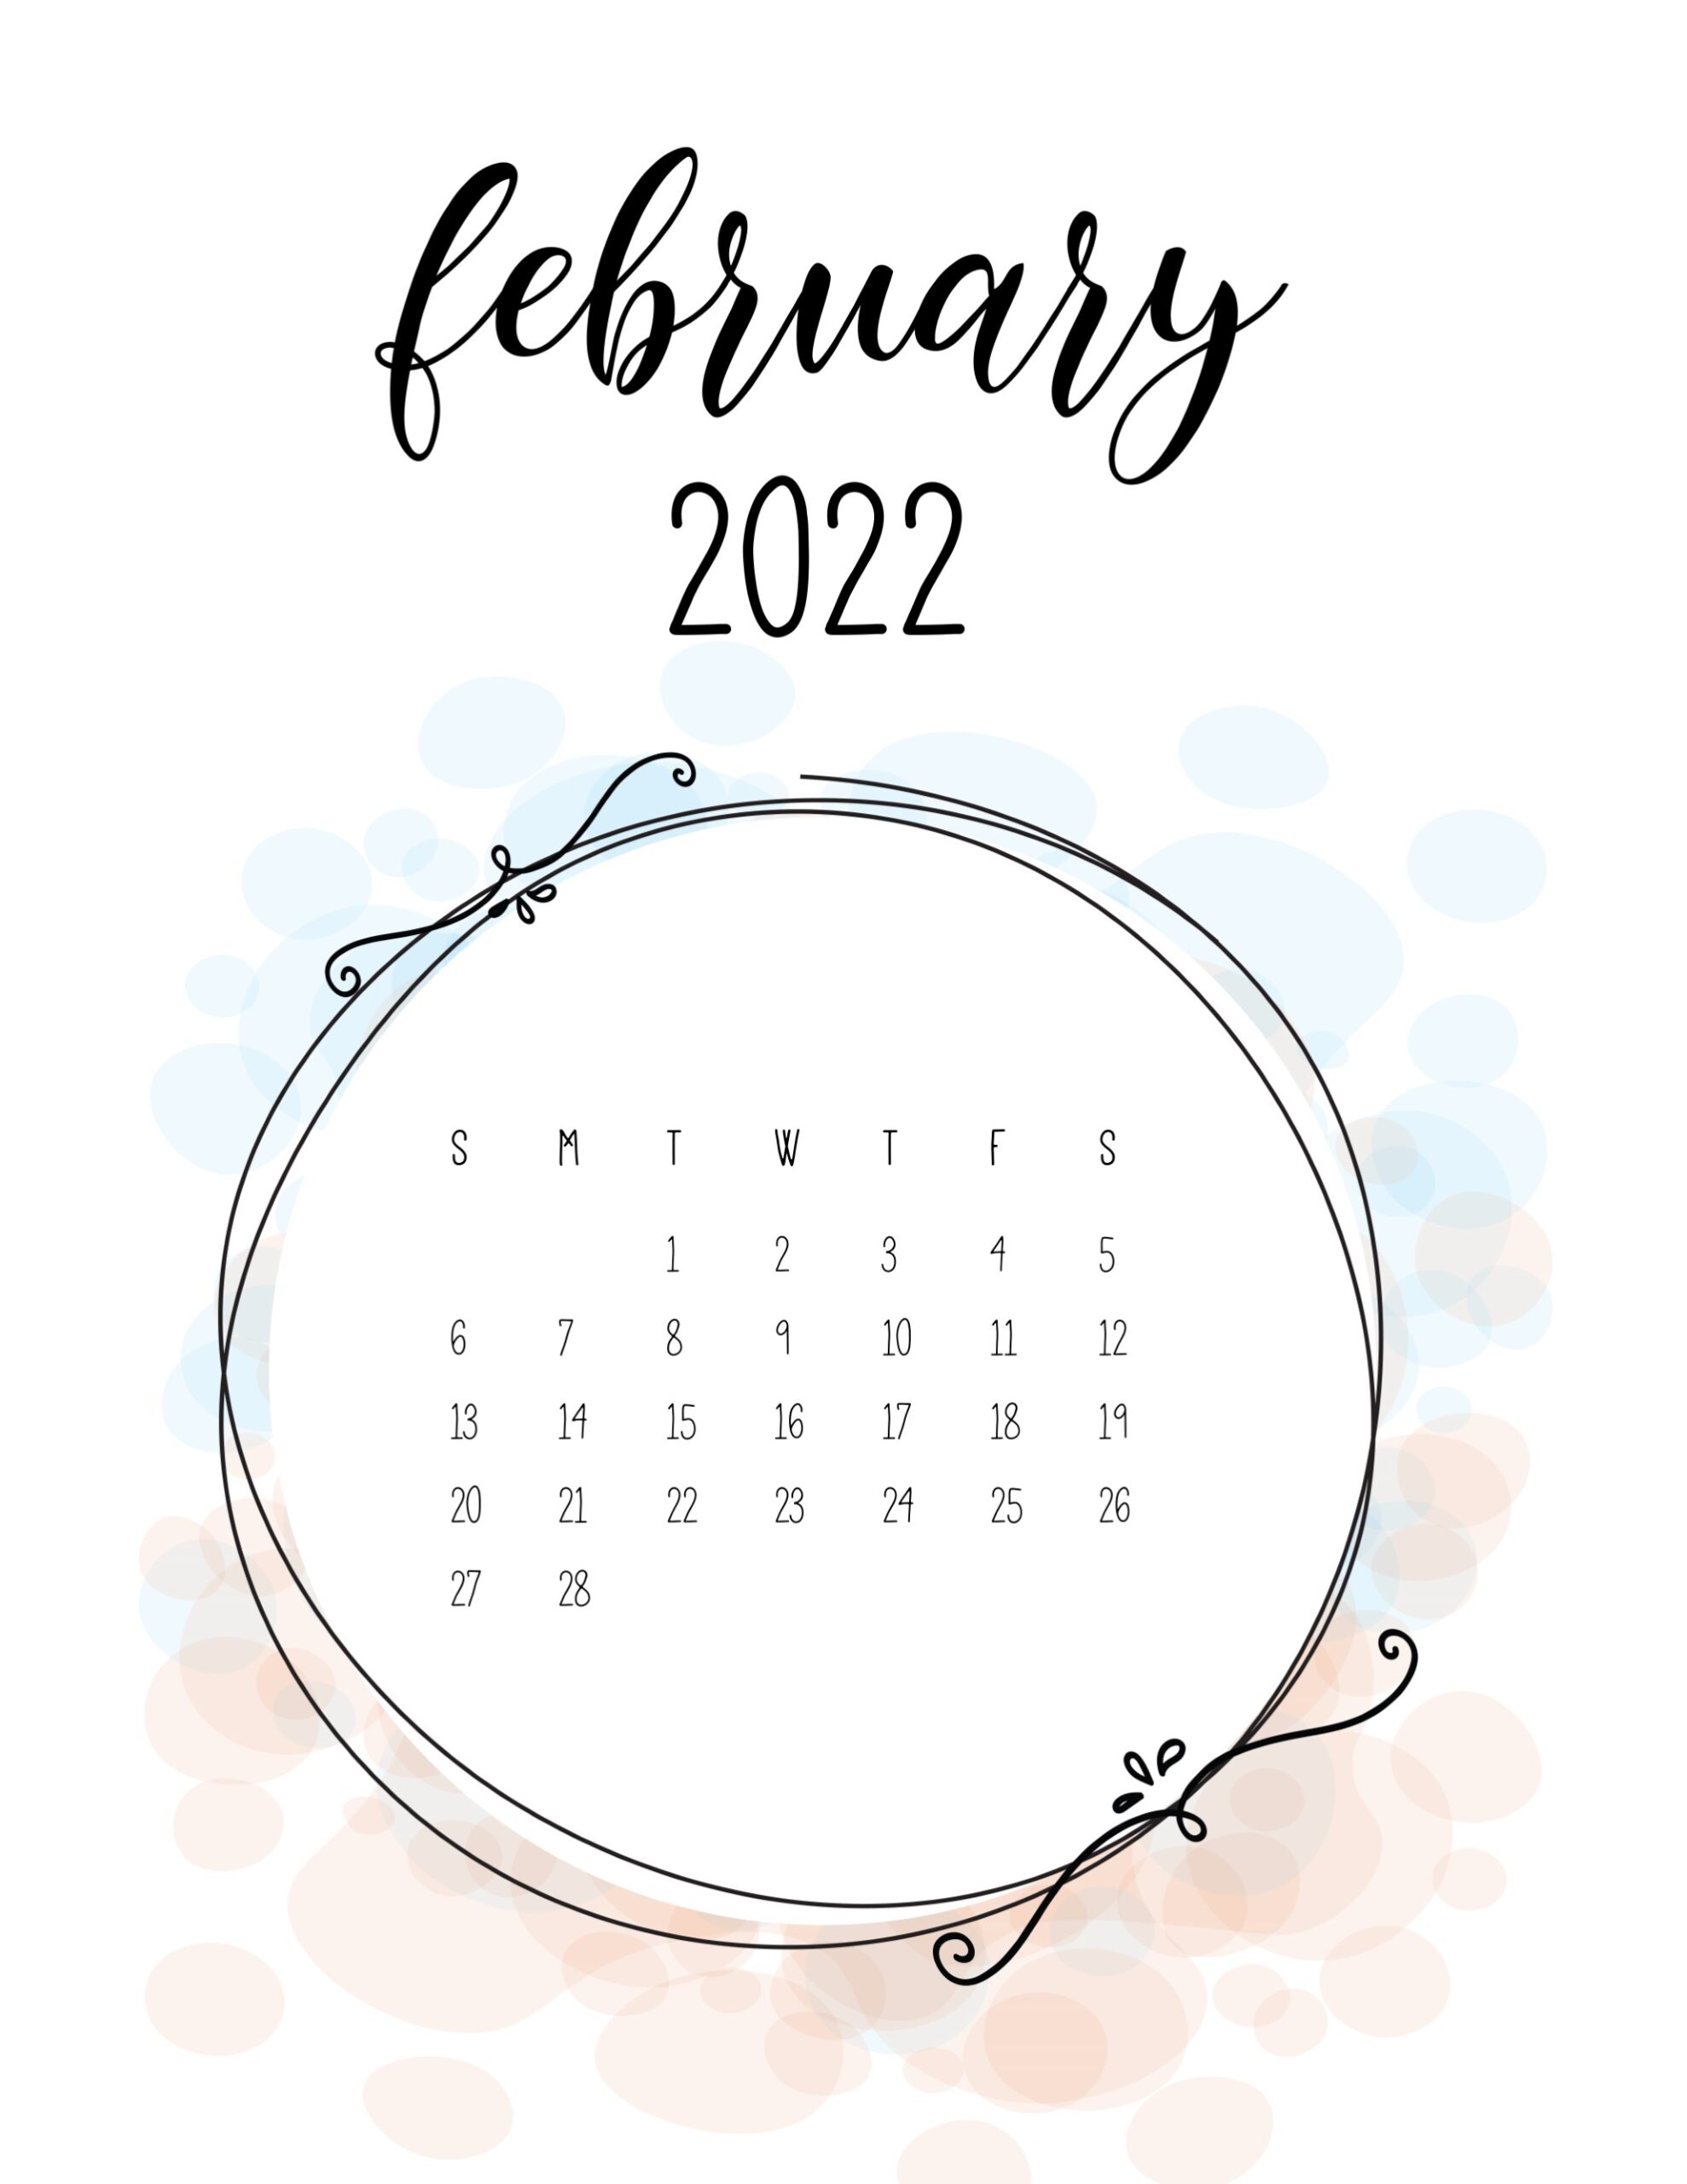 Calendario 2022 love fevereiro